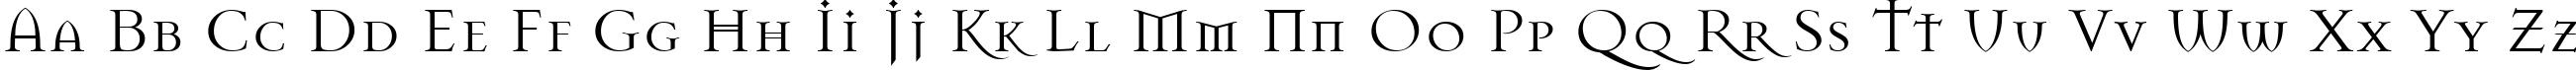 Пример написания английского алфавита шрифтом Mason Regular